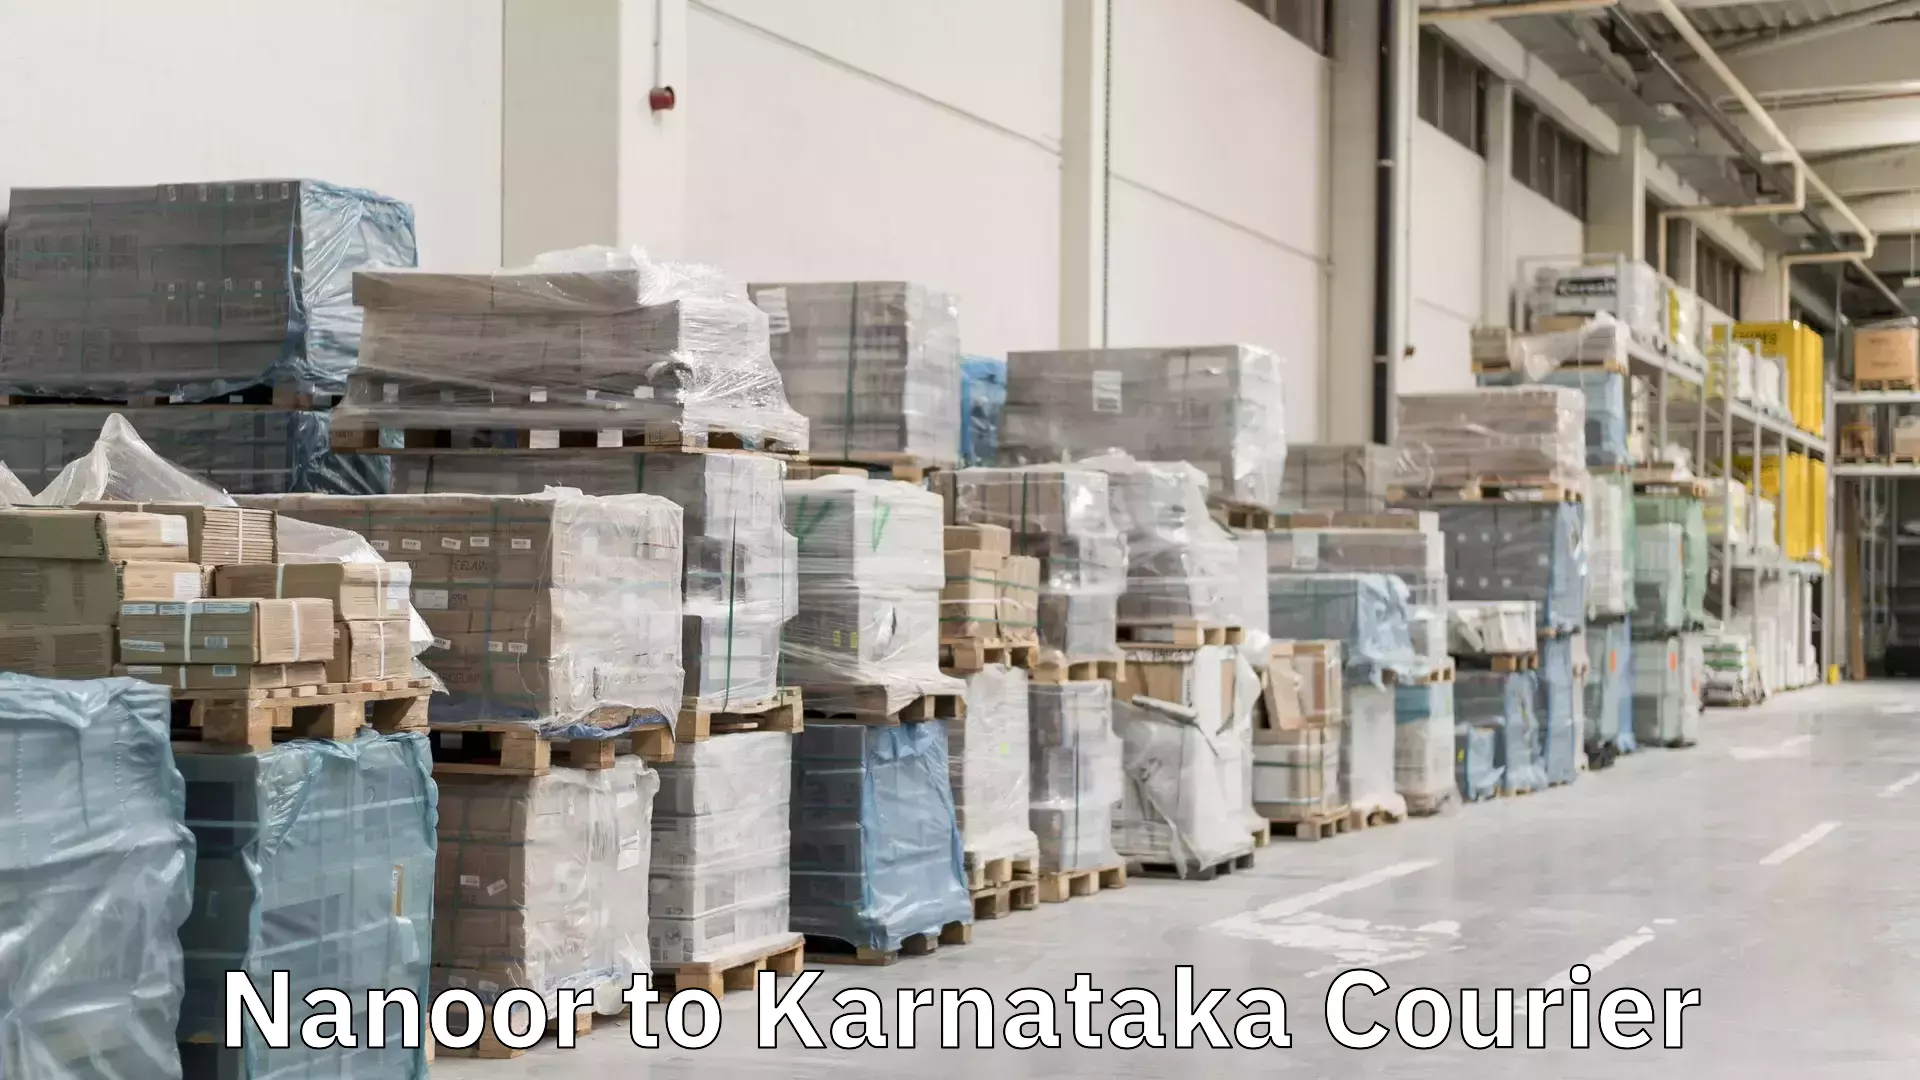 24/7 shipping services Nanoor to Karnataka